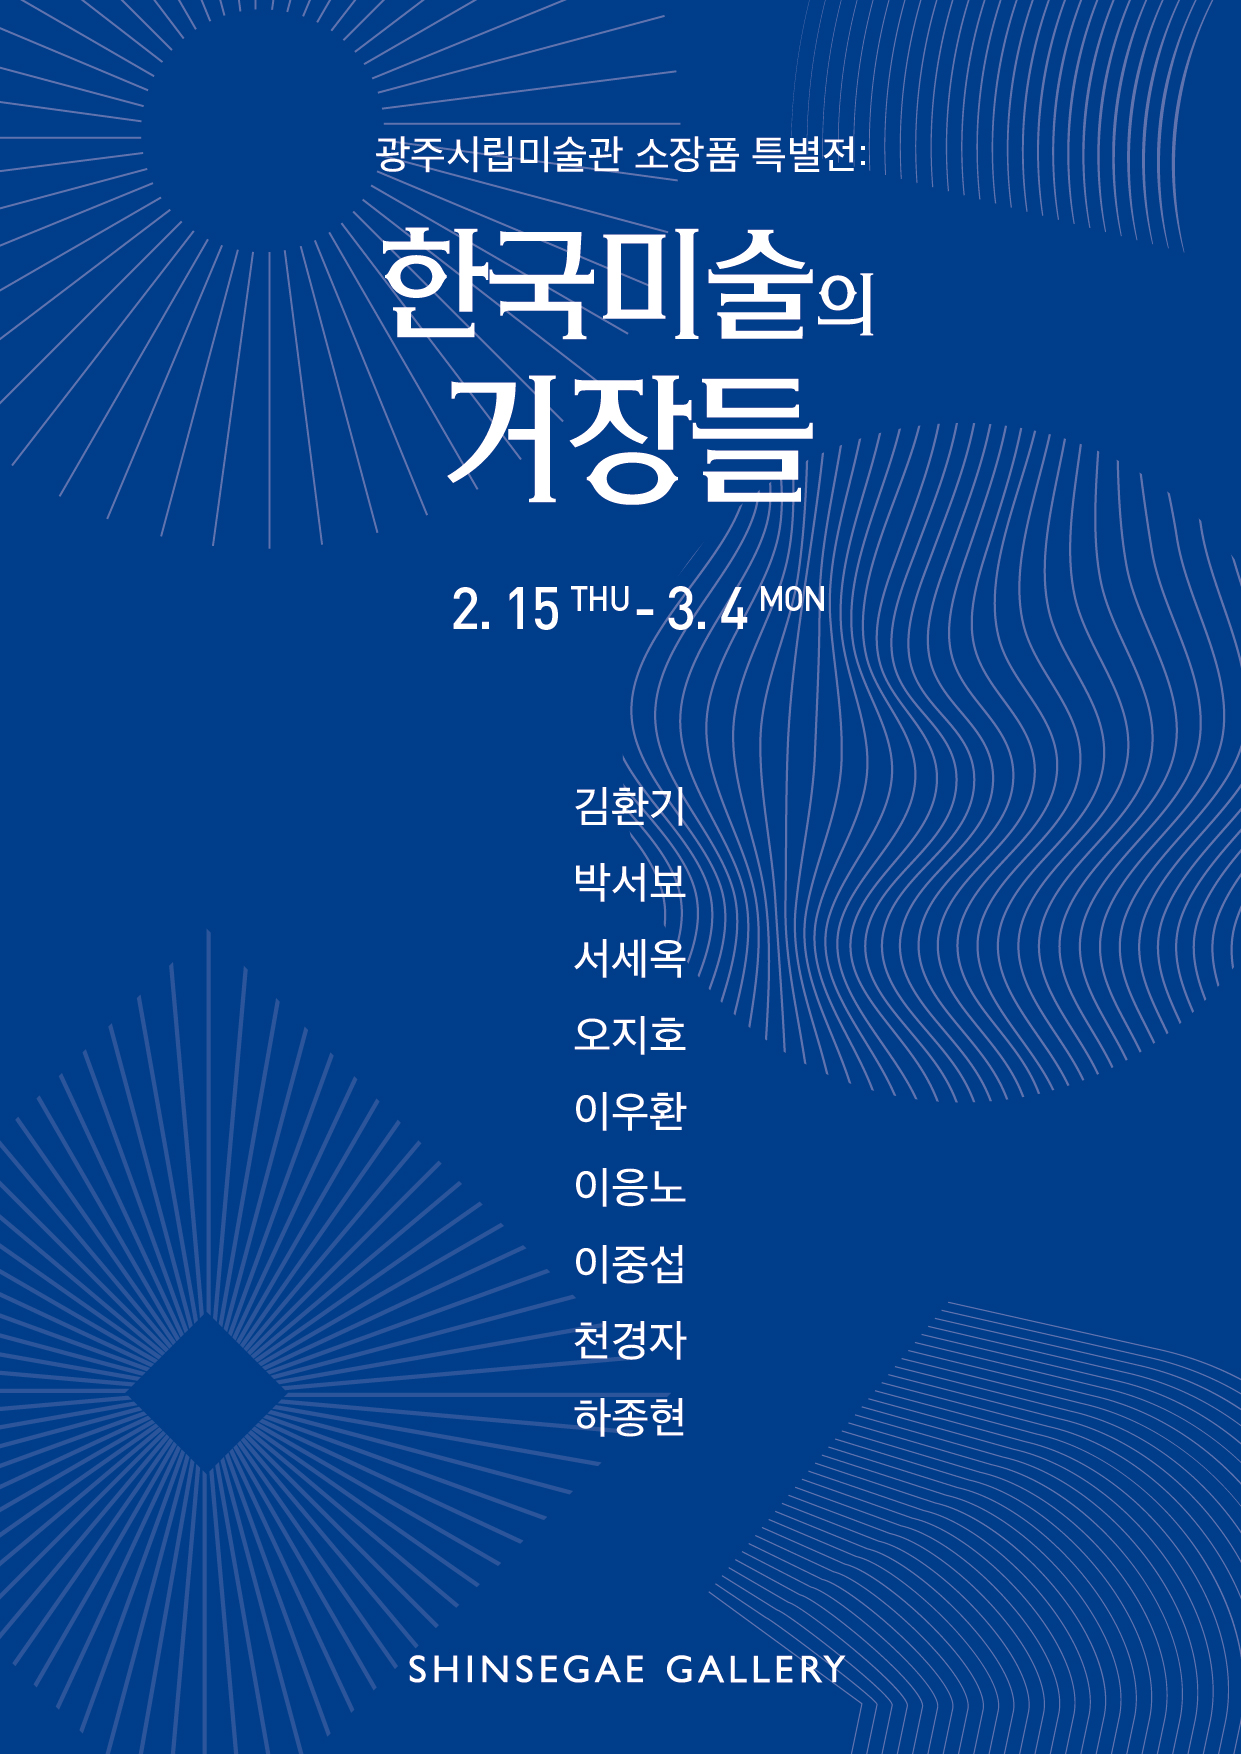 작품:광주시립미술관 소장품 특별전: 한국미술의 거장들